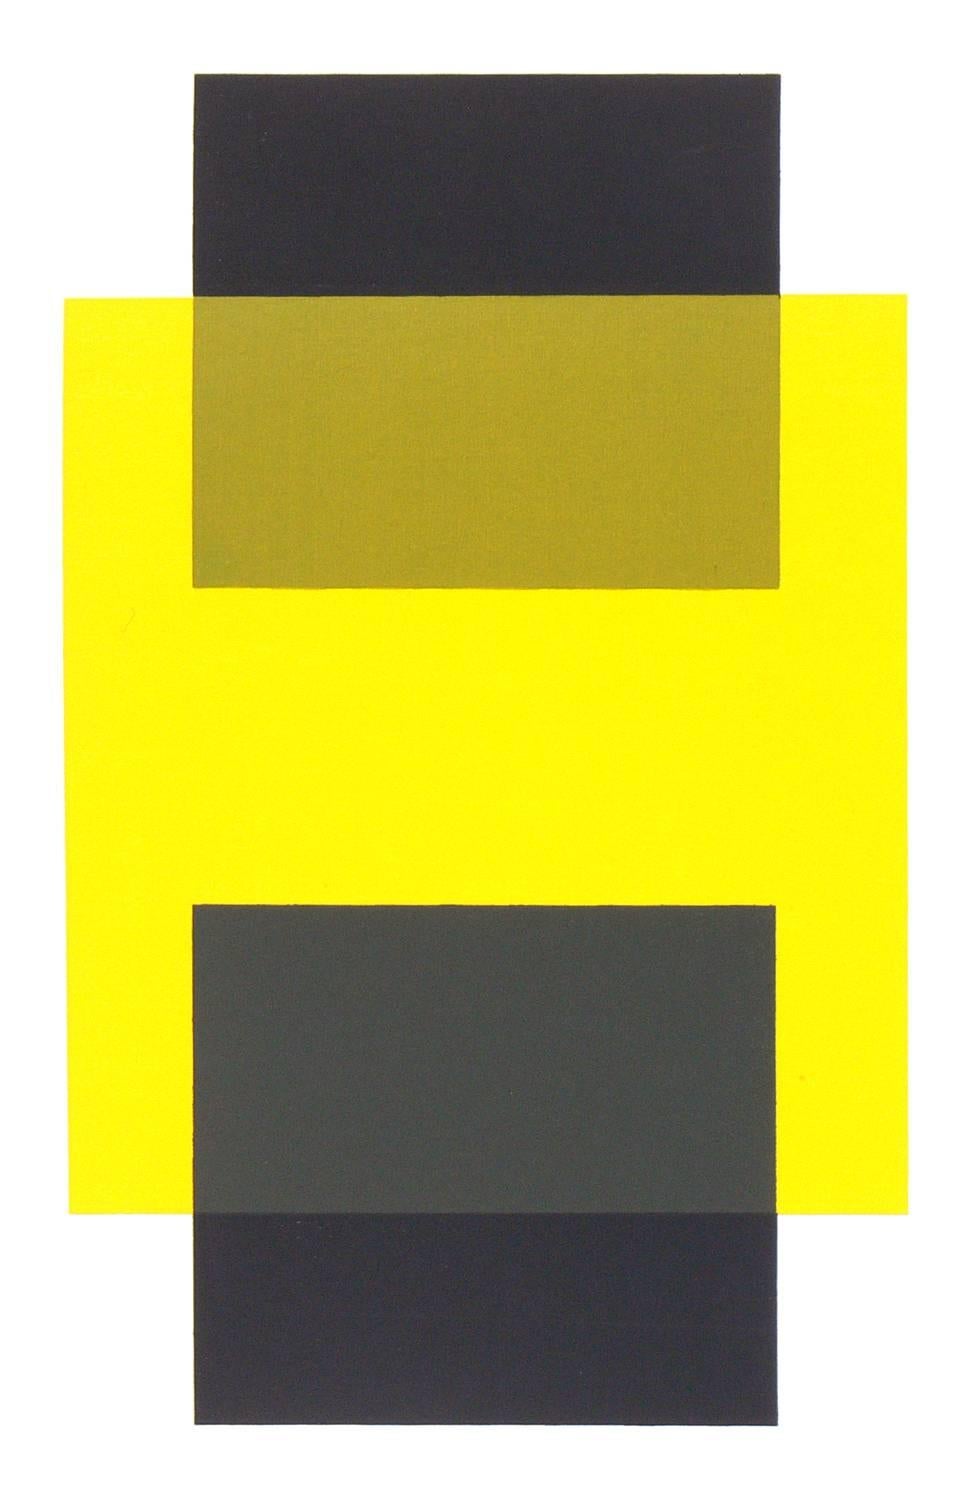 Lithographies abstraites de Josef Albers provenant du dossier XI-1, interaction de la couleur, vers les années 1960. mise à jour